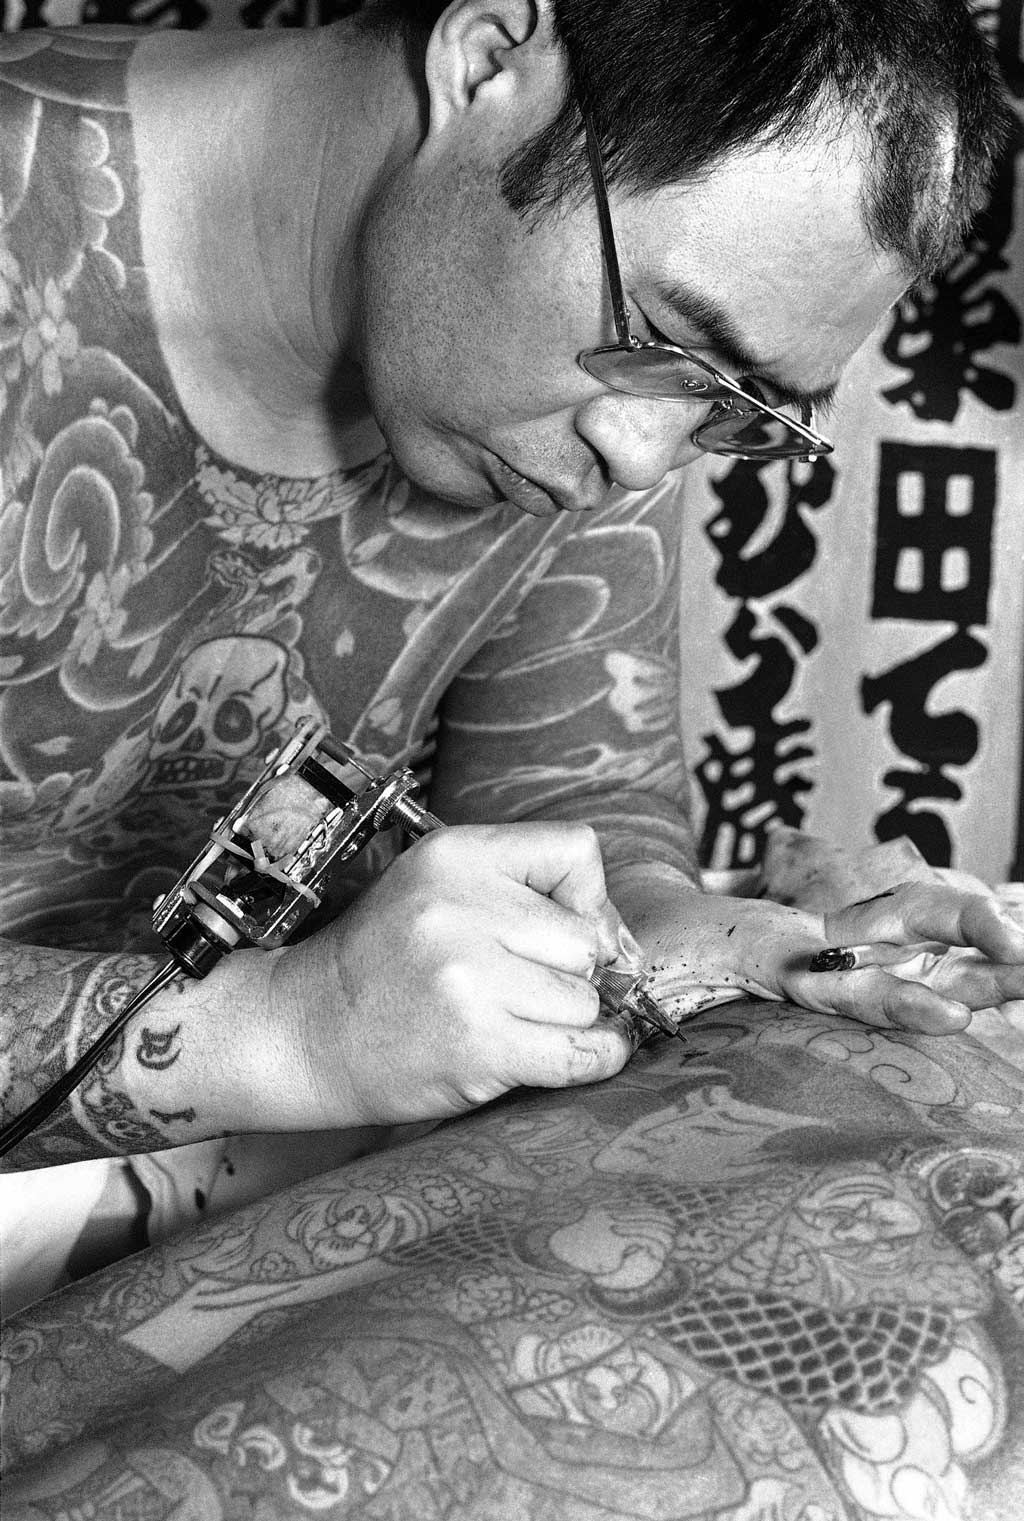 Nghệ sĩ xăm hình Nhật Bản sử dụng máy xăm điện để nhúng sắc tố vào da của khách hàng